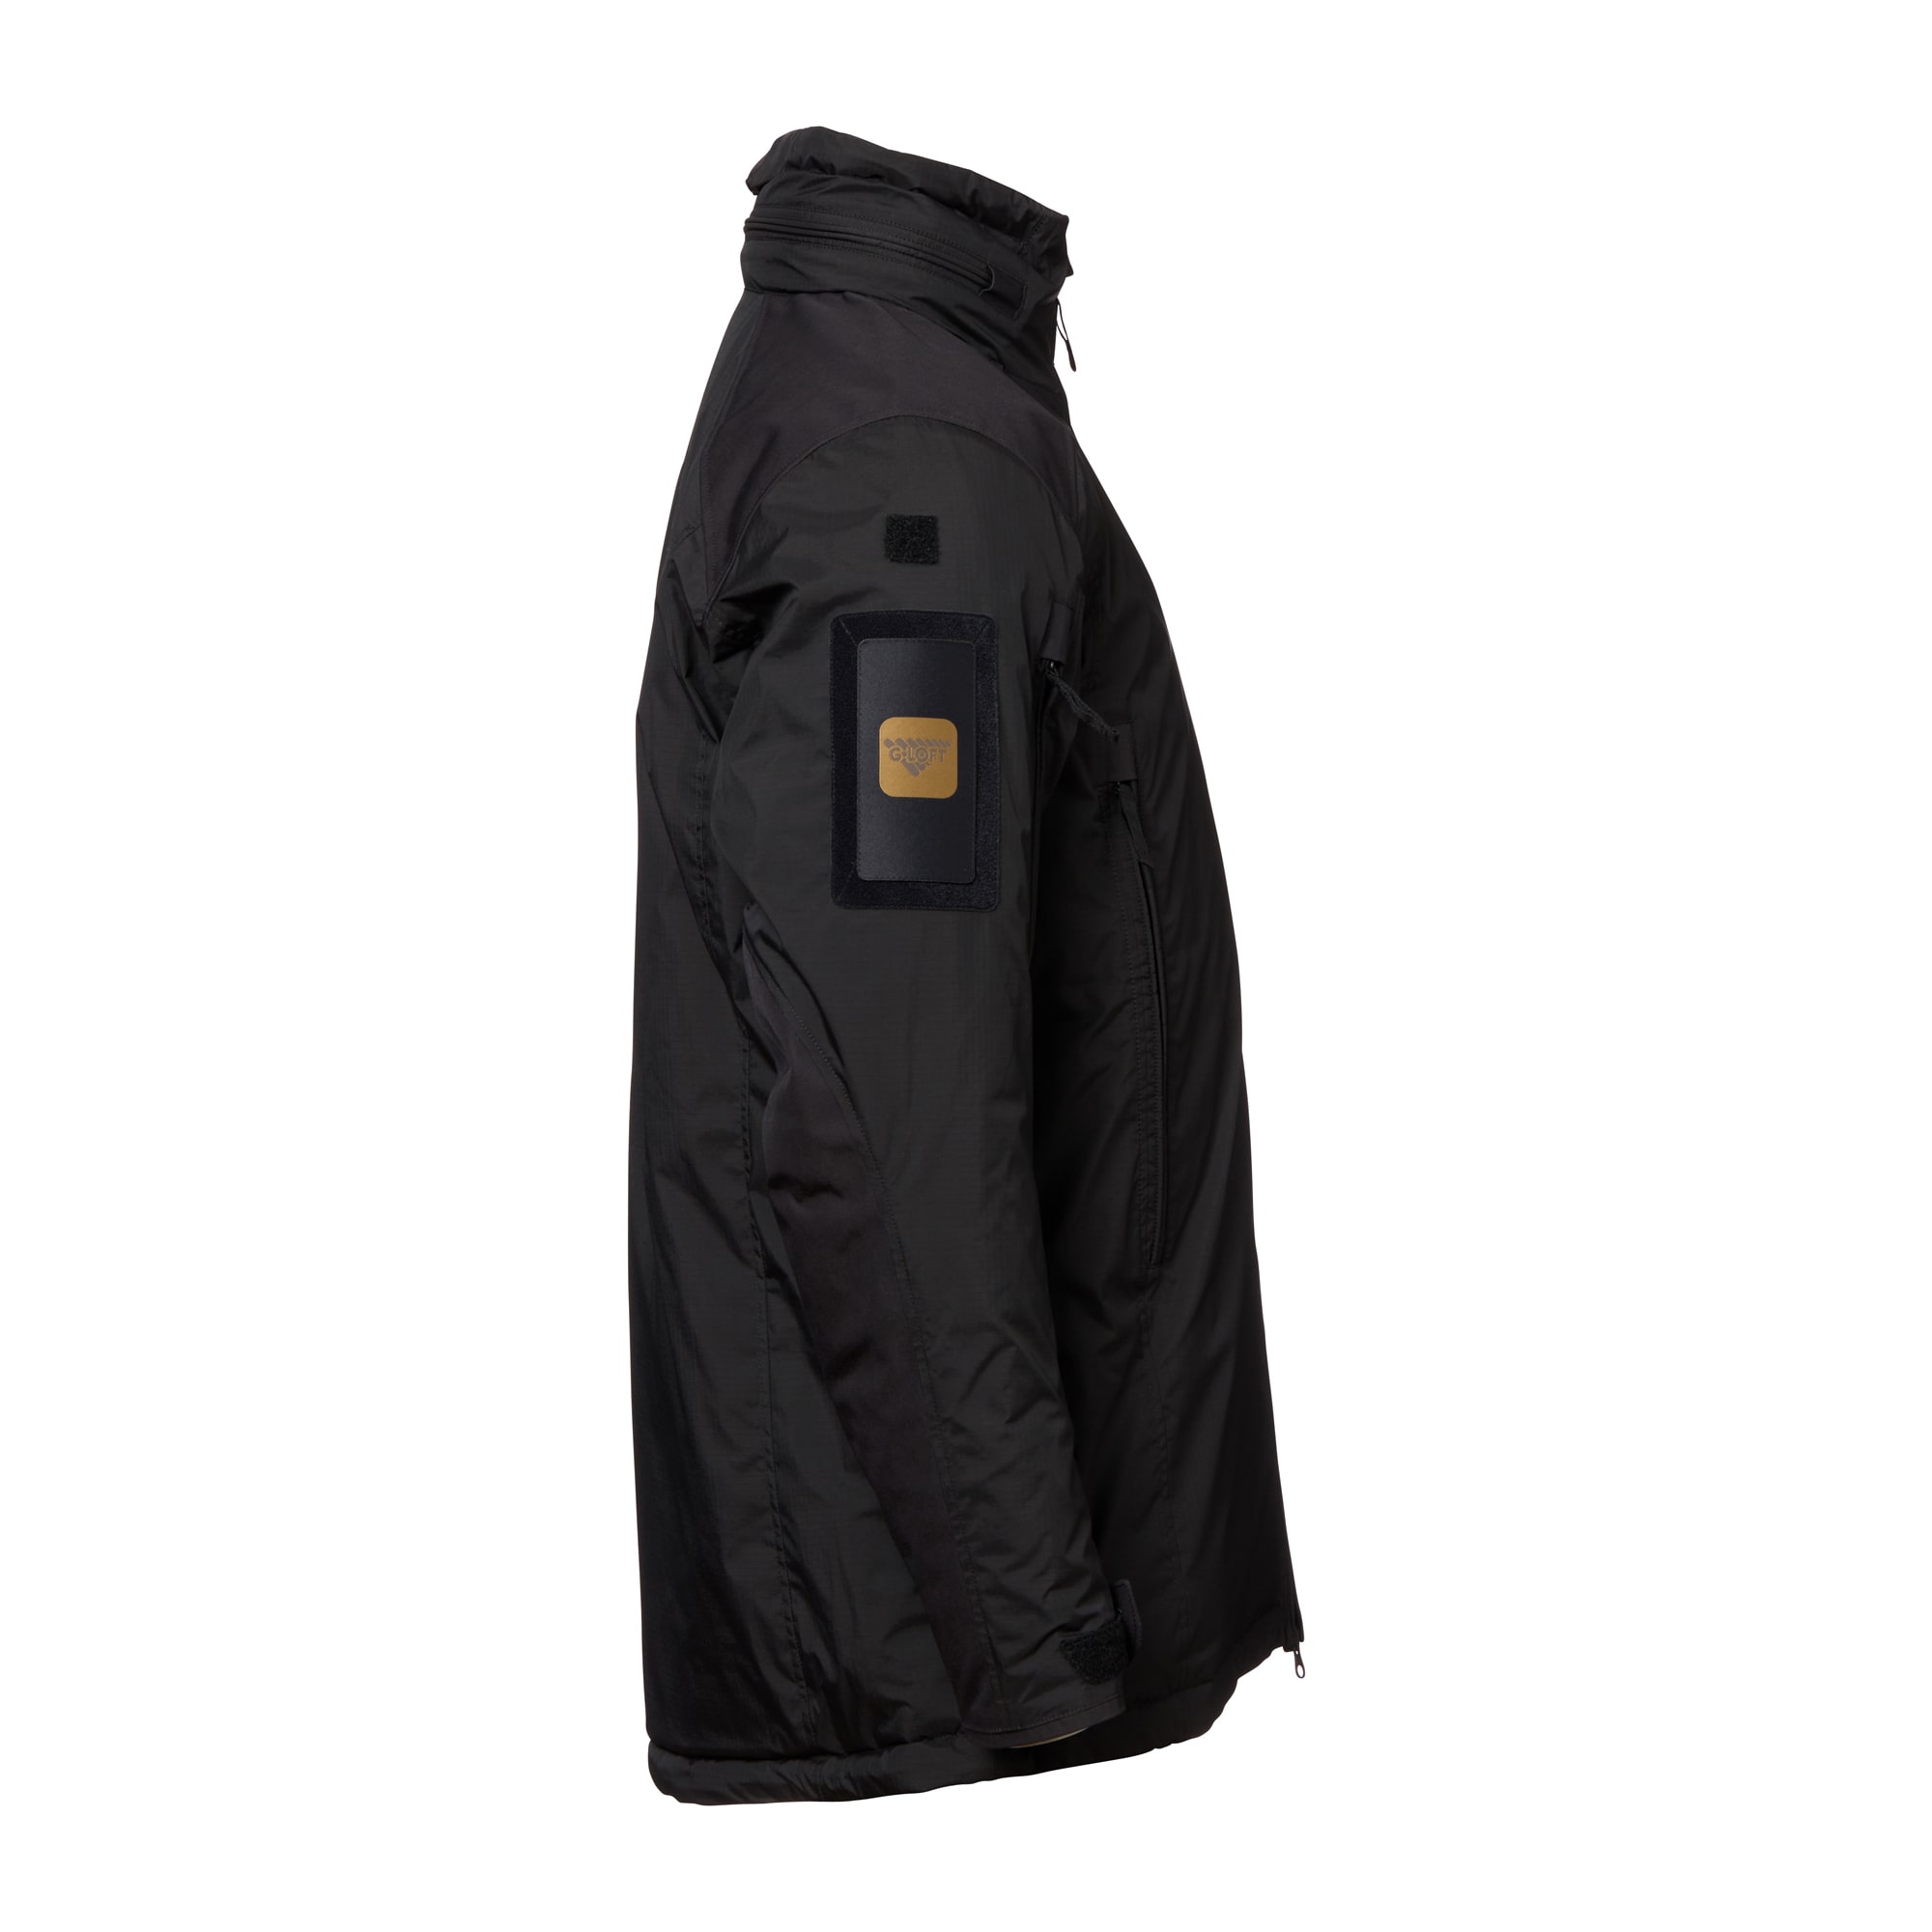 Carinthia Jacket HIG 4.0 black | Carinthia Jacket HIG 4.0 black ...